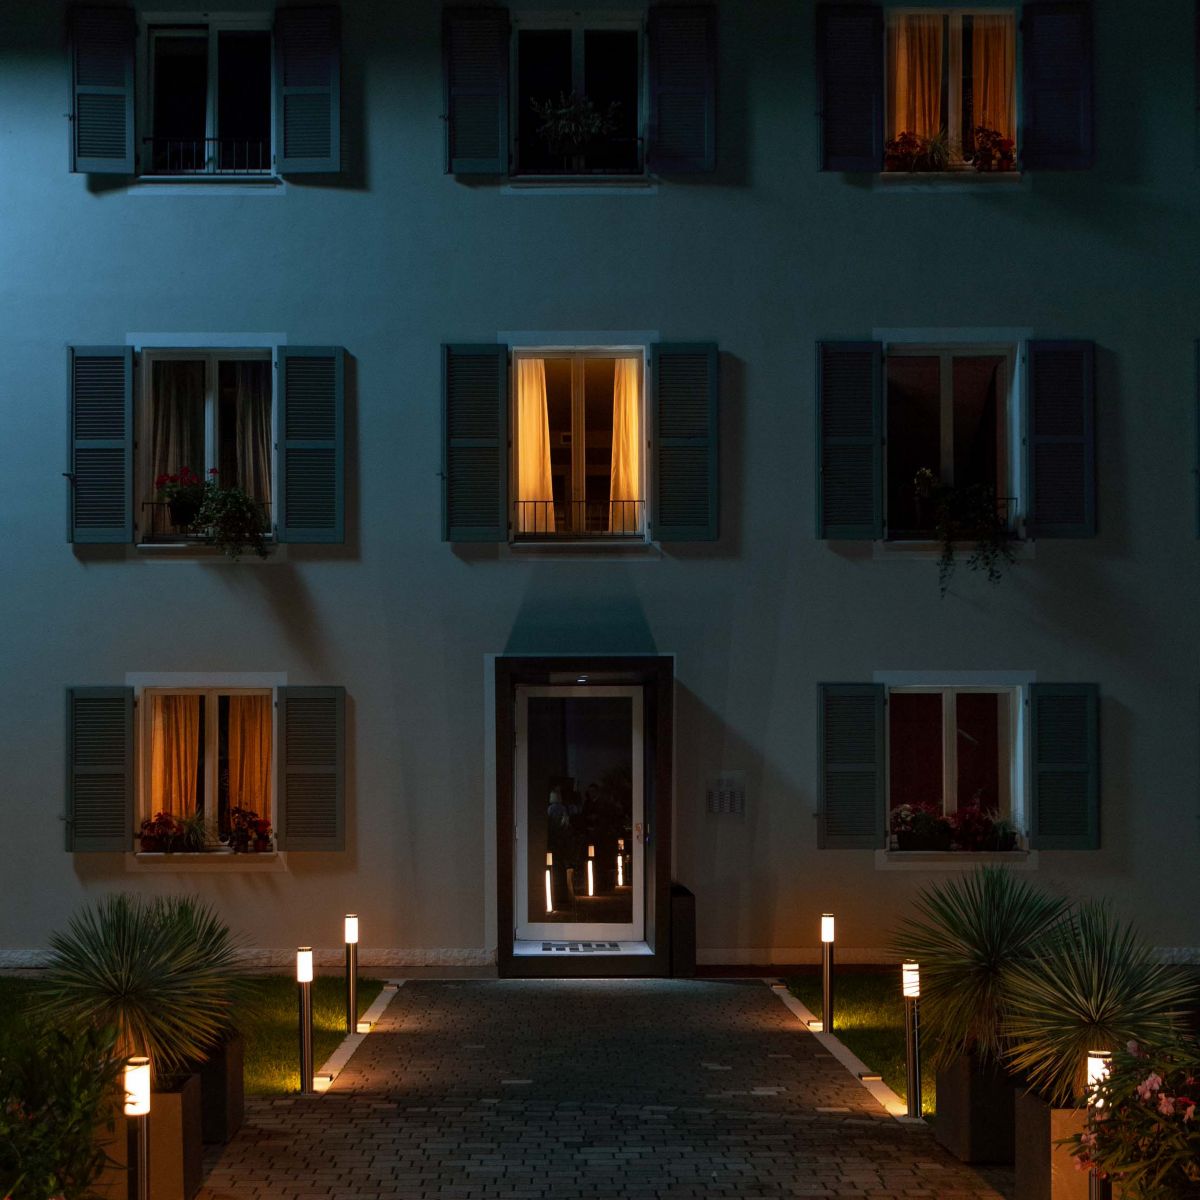 Una casa bianca con tre finestre illuminate e le altre al buio. Davanti alla porta d’ingresso c’è un vialetto con delle luci da esterno accese.